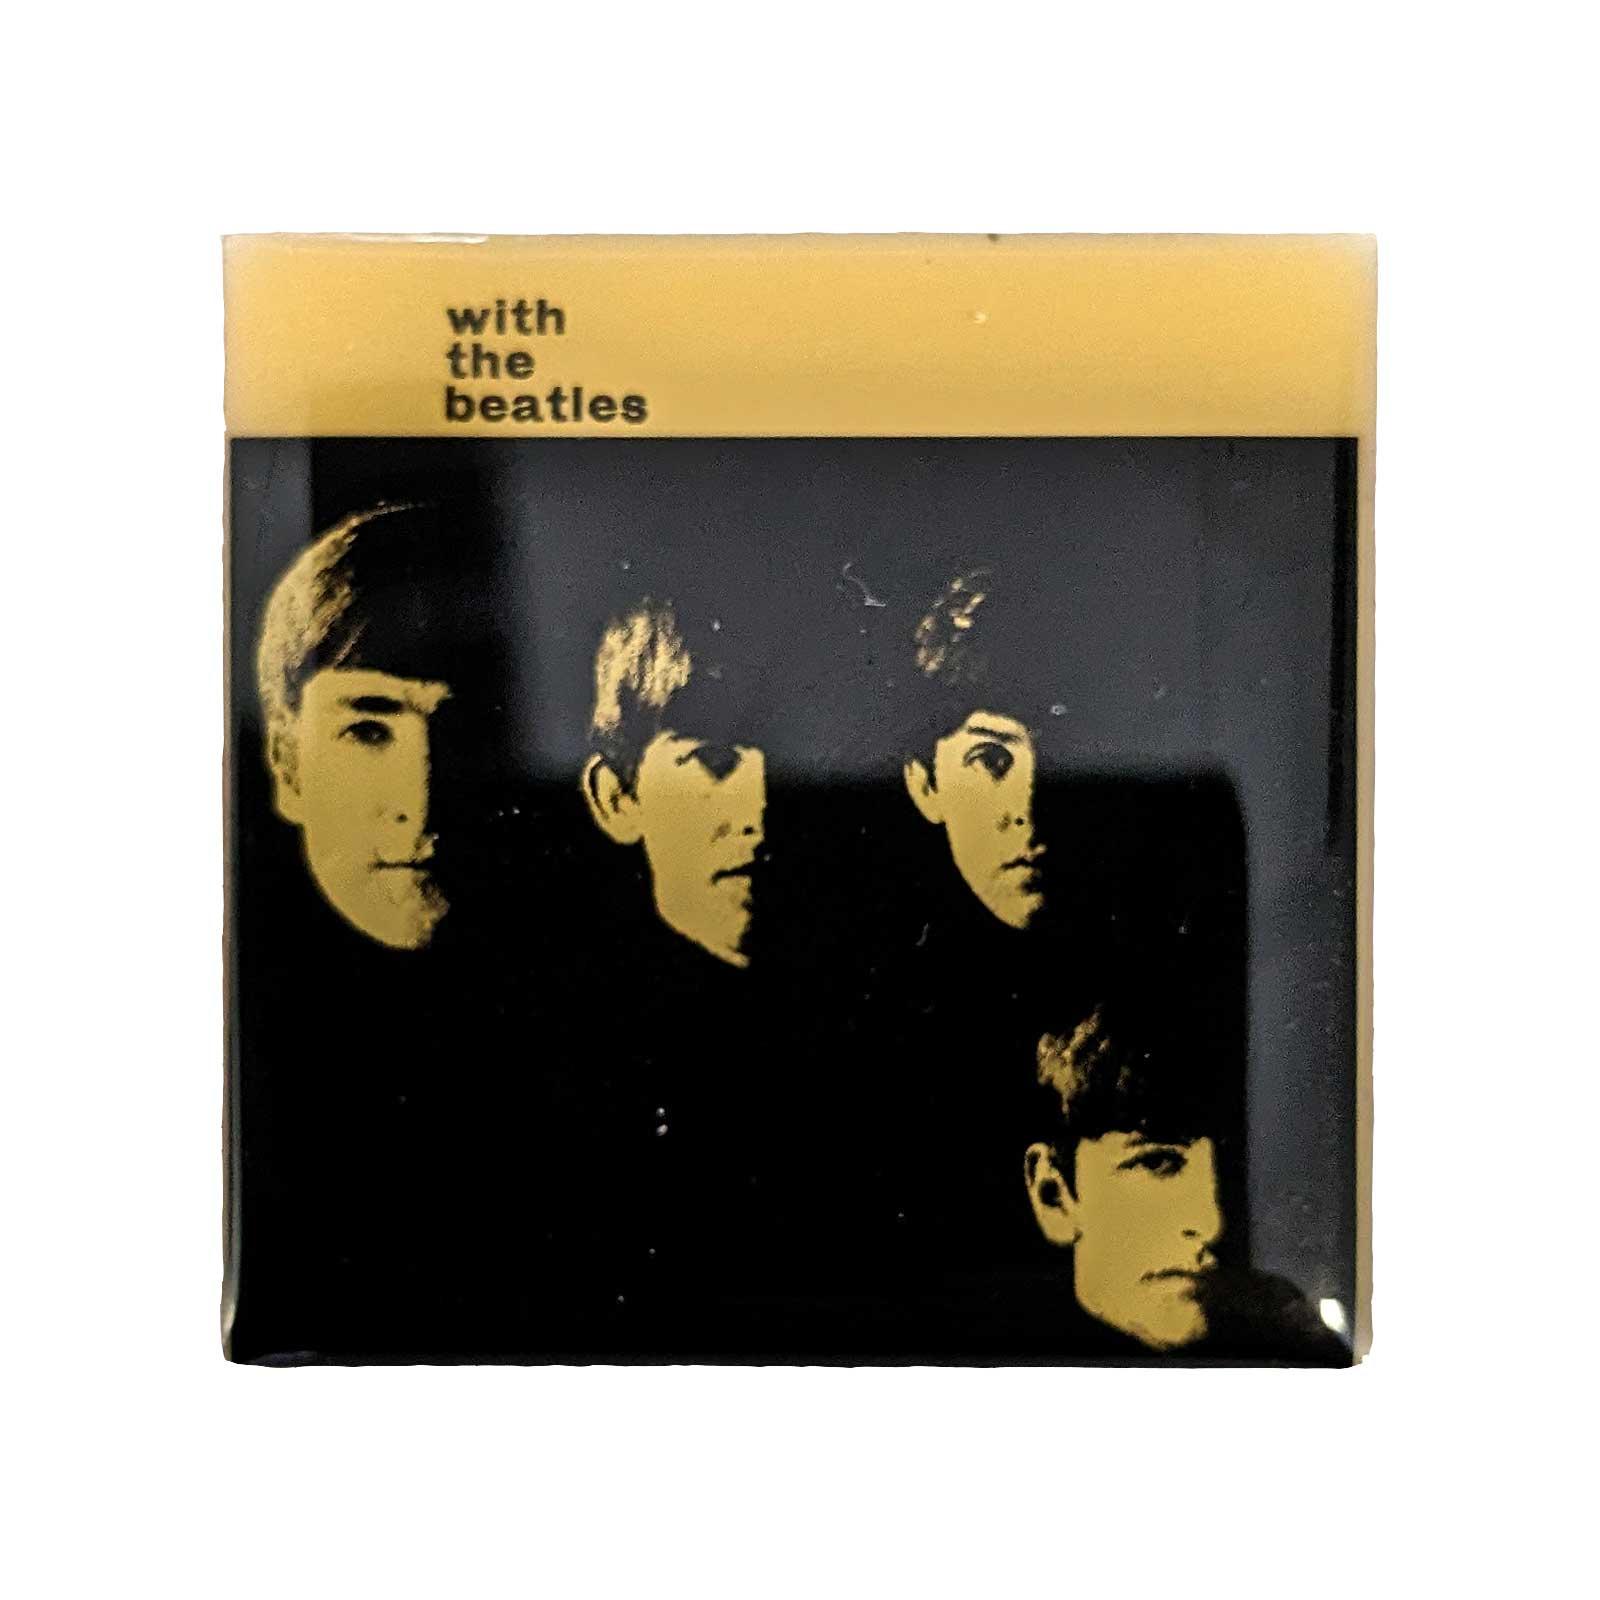 (ビートルズ) The Beatles オフィシャル商品 With The Beatles バッジ 【海外通販】